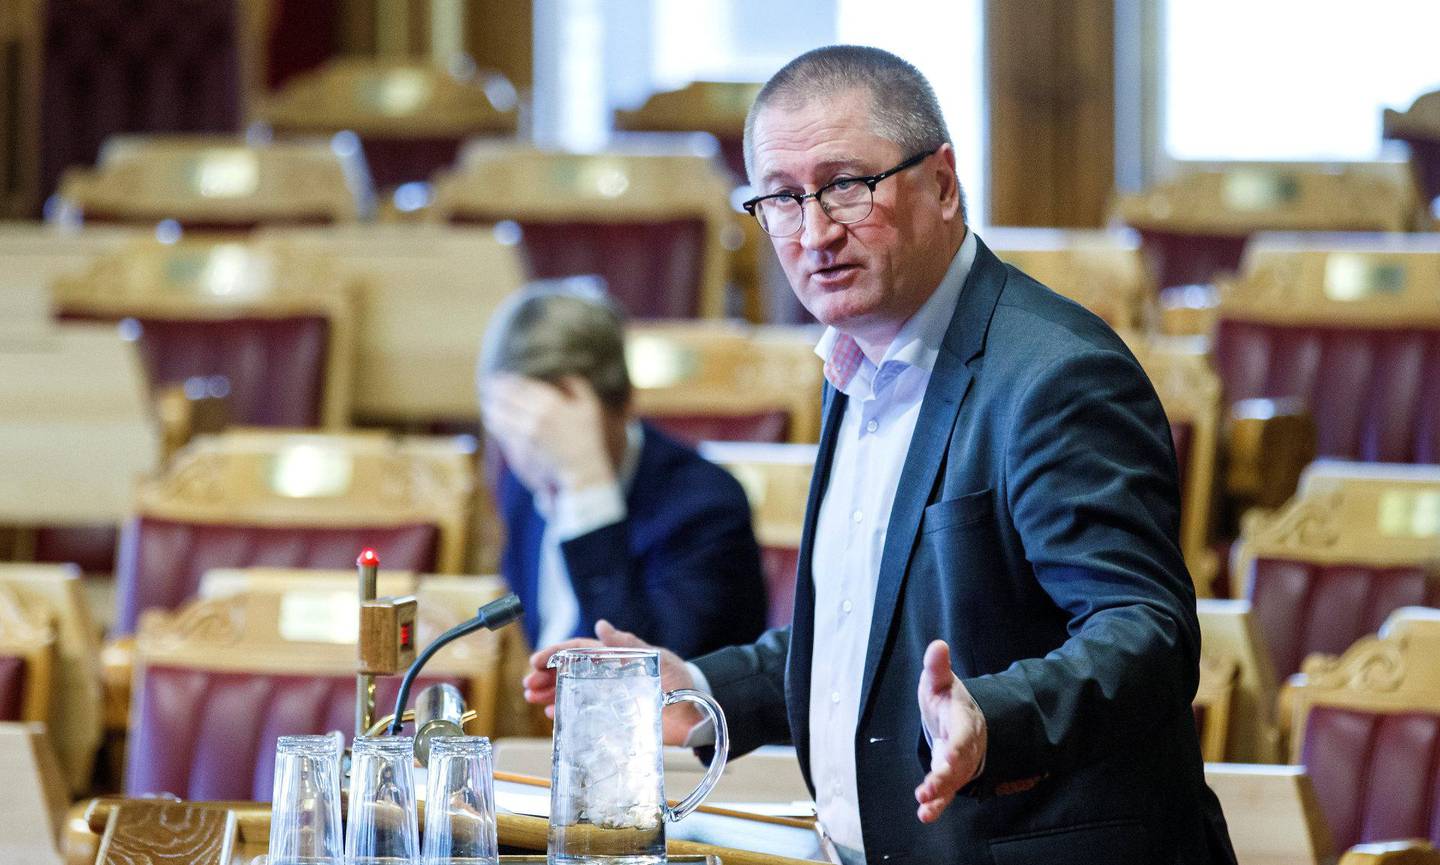 TAS I FORSVAR: KrF-er og prest Geir Jørgen Bekkevold, som har møtt motstand i eget parti etter en homofil vielse.